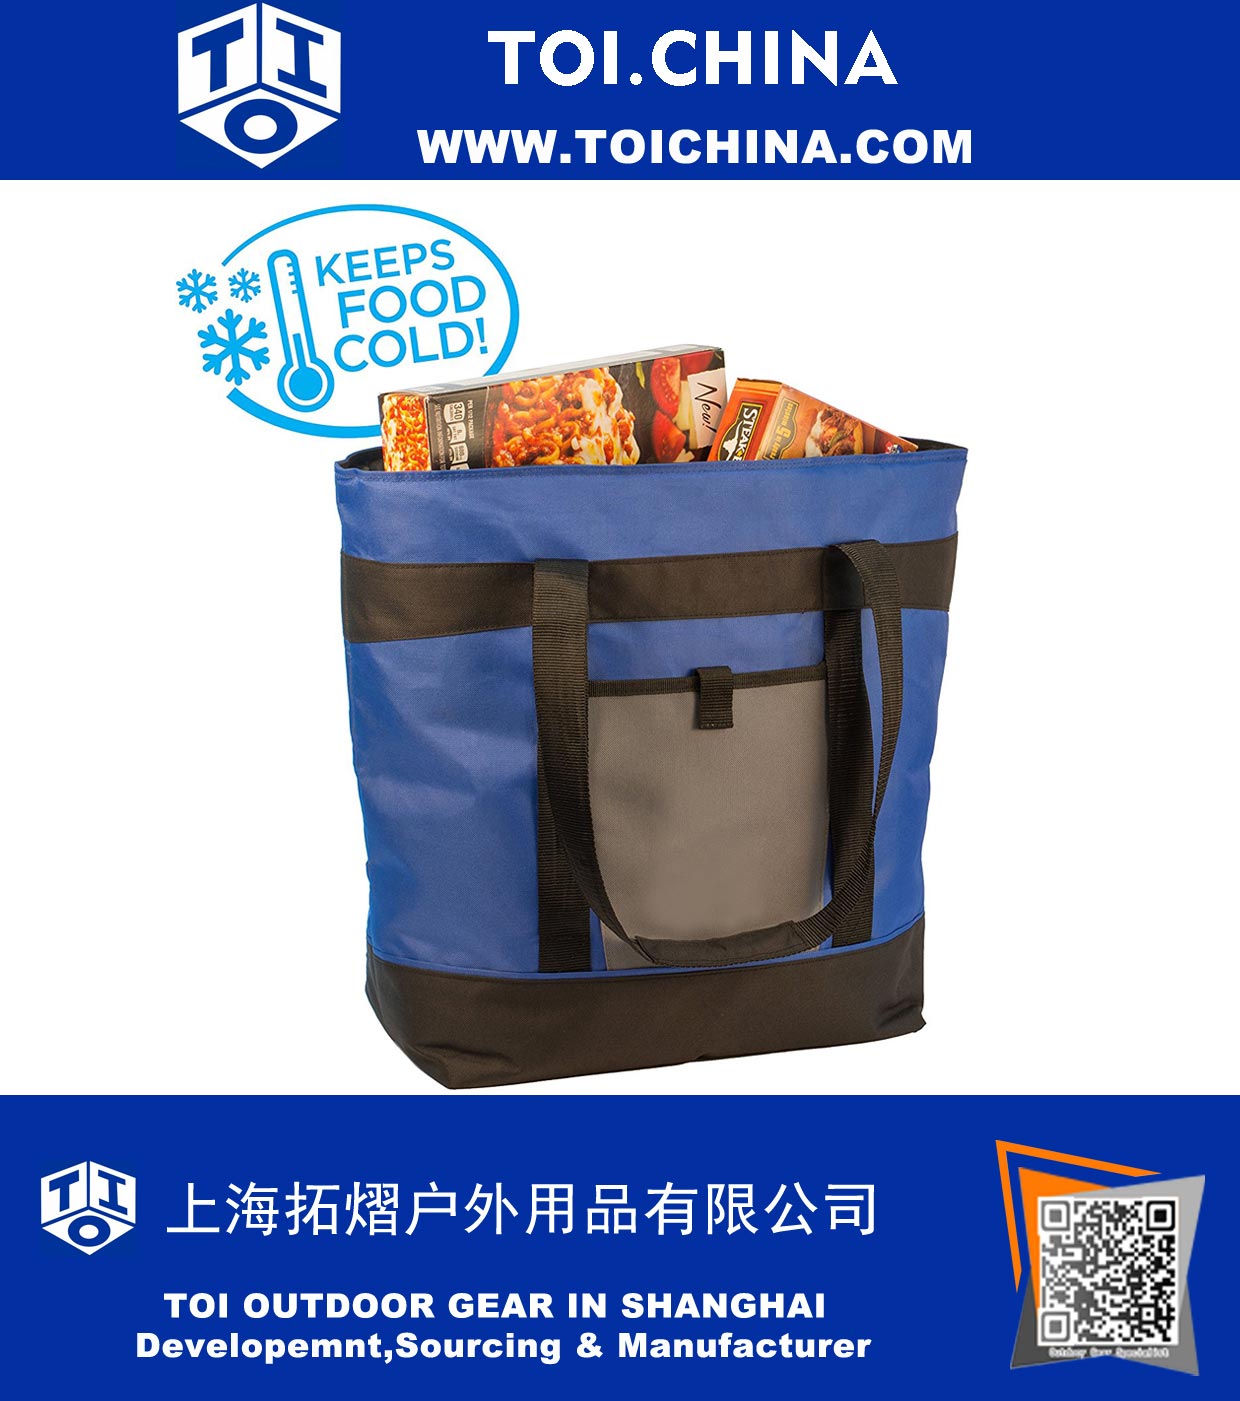 Изолированная сумка для бакалеи - большая емкость 10 галлонов, мягкий односторонний охладитель с толстой стенной изоляцией - идеально подходит для горячей или холодной пищи